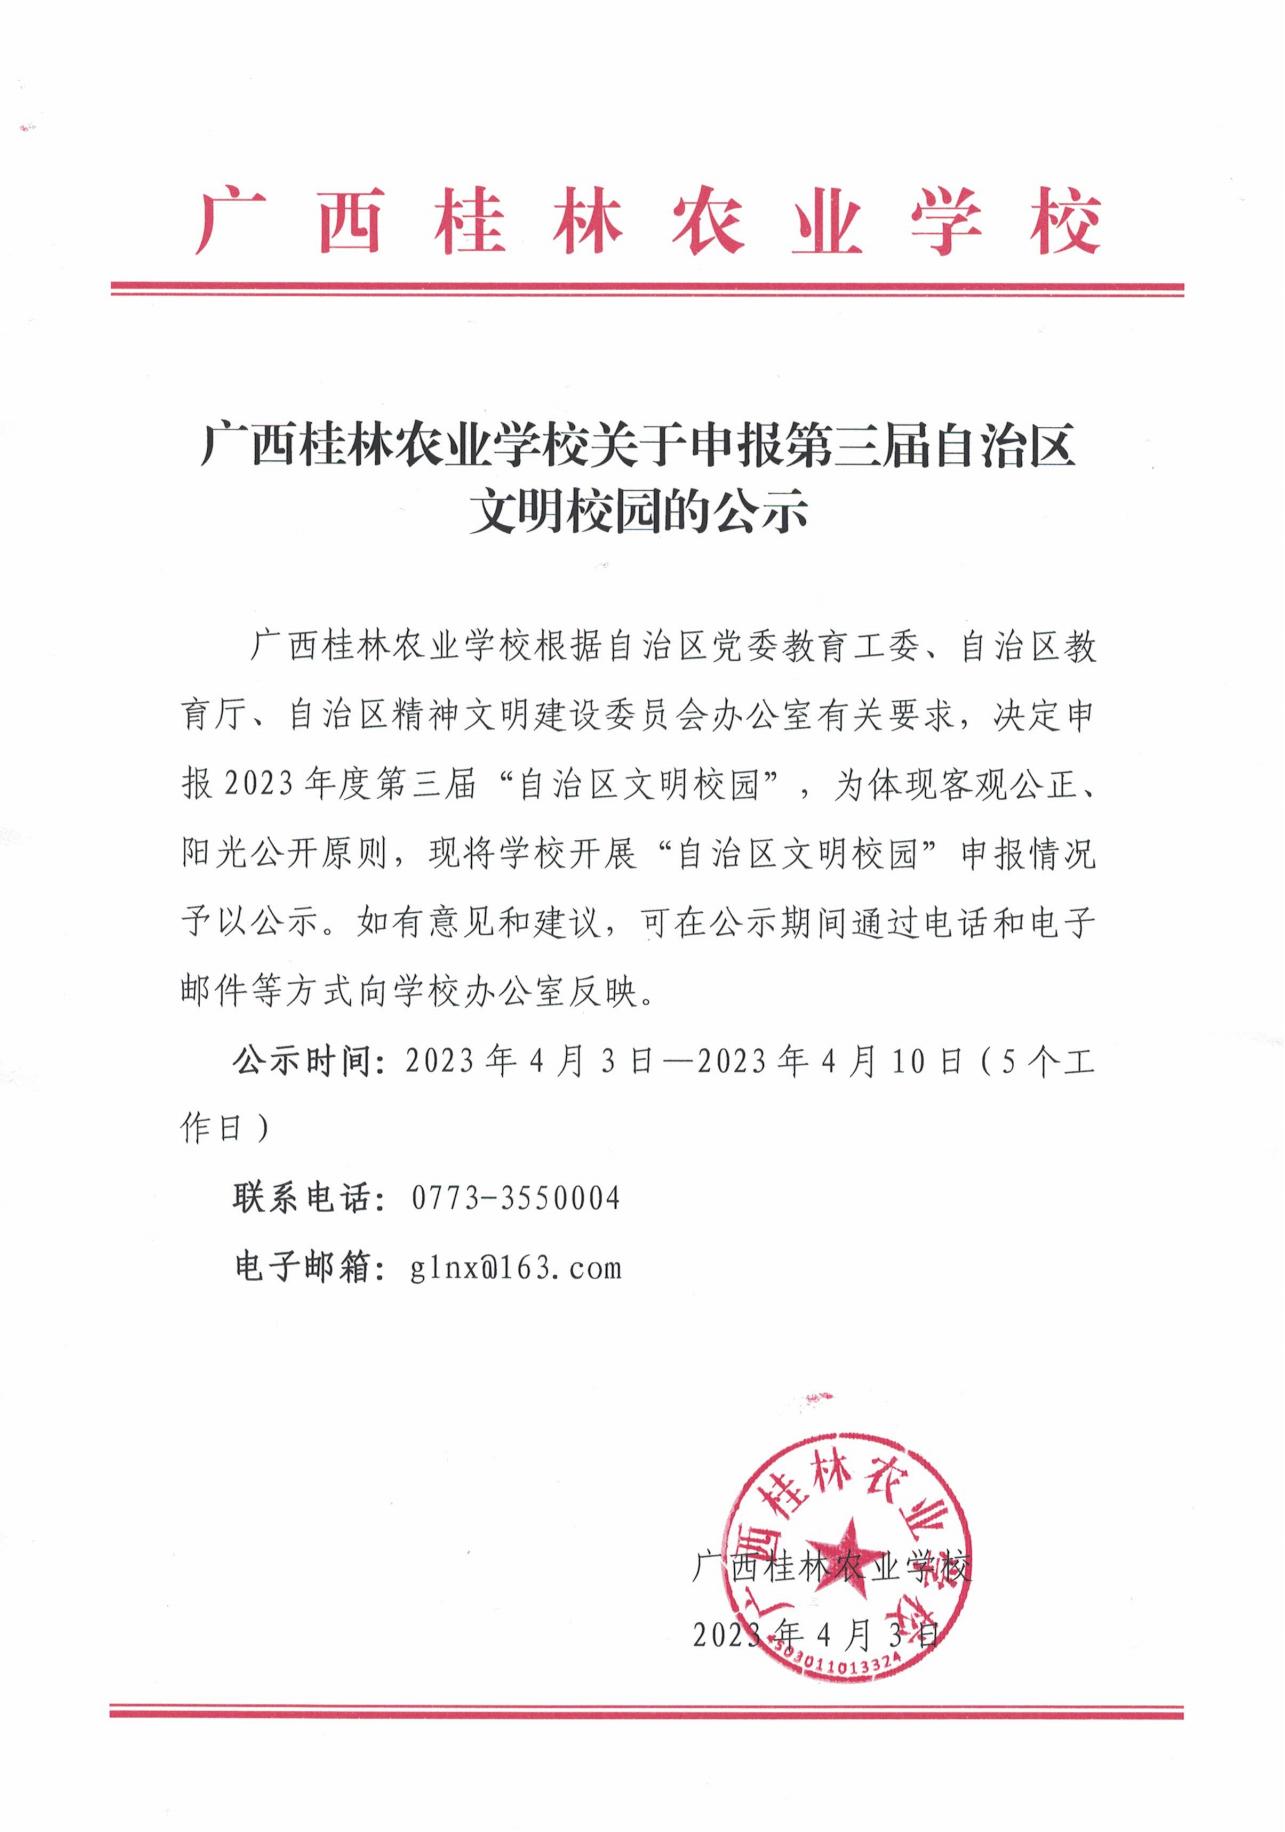 广西桂林农业学校关于申报第三届自治区文明校园的公示_00.jpg